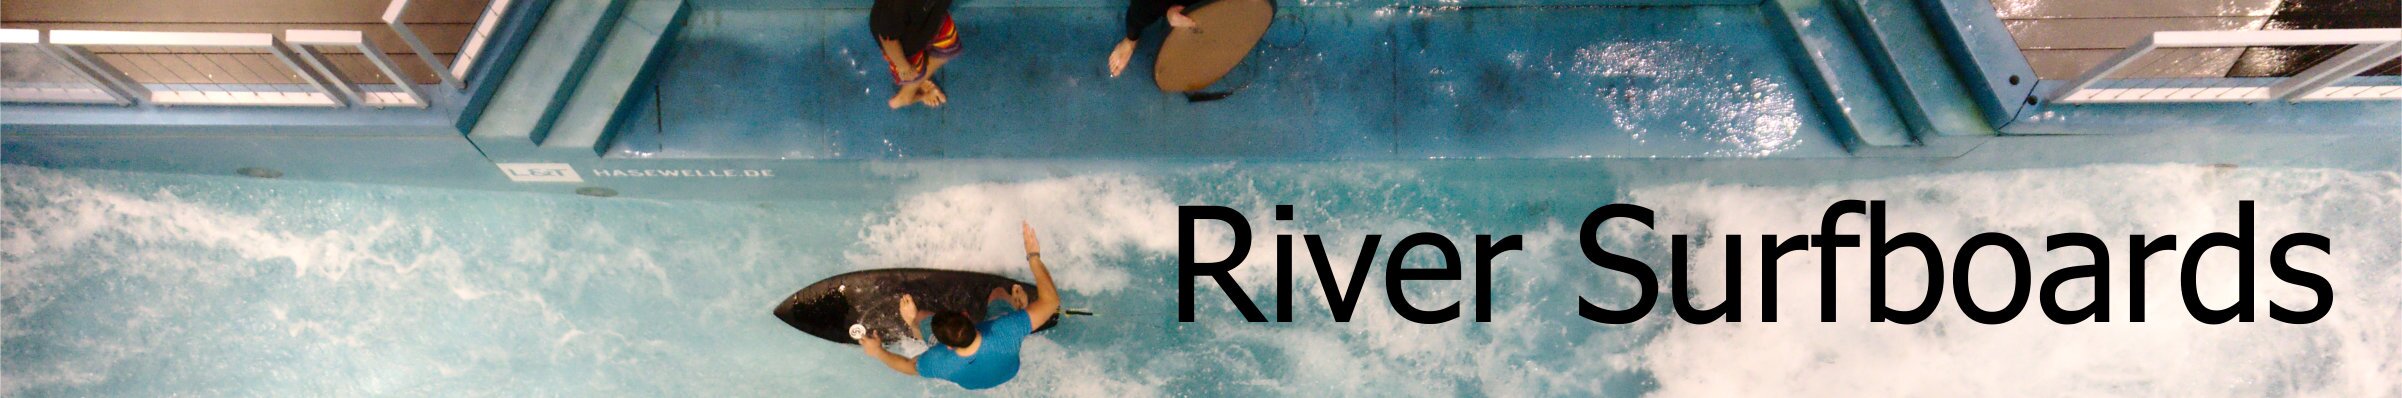 river surfboards kaufen surfganic surfshop slider